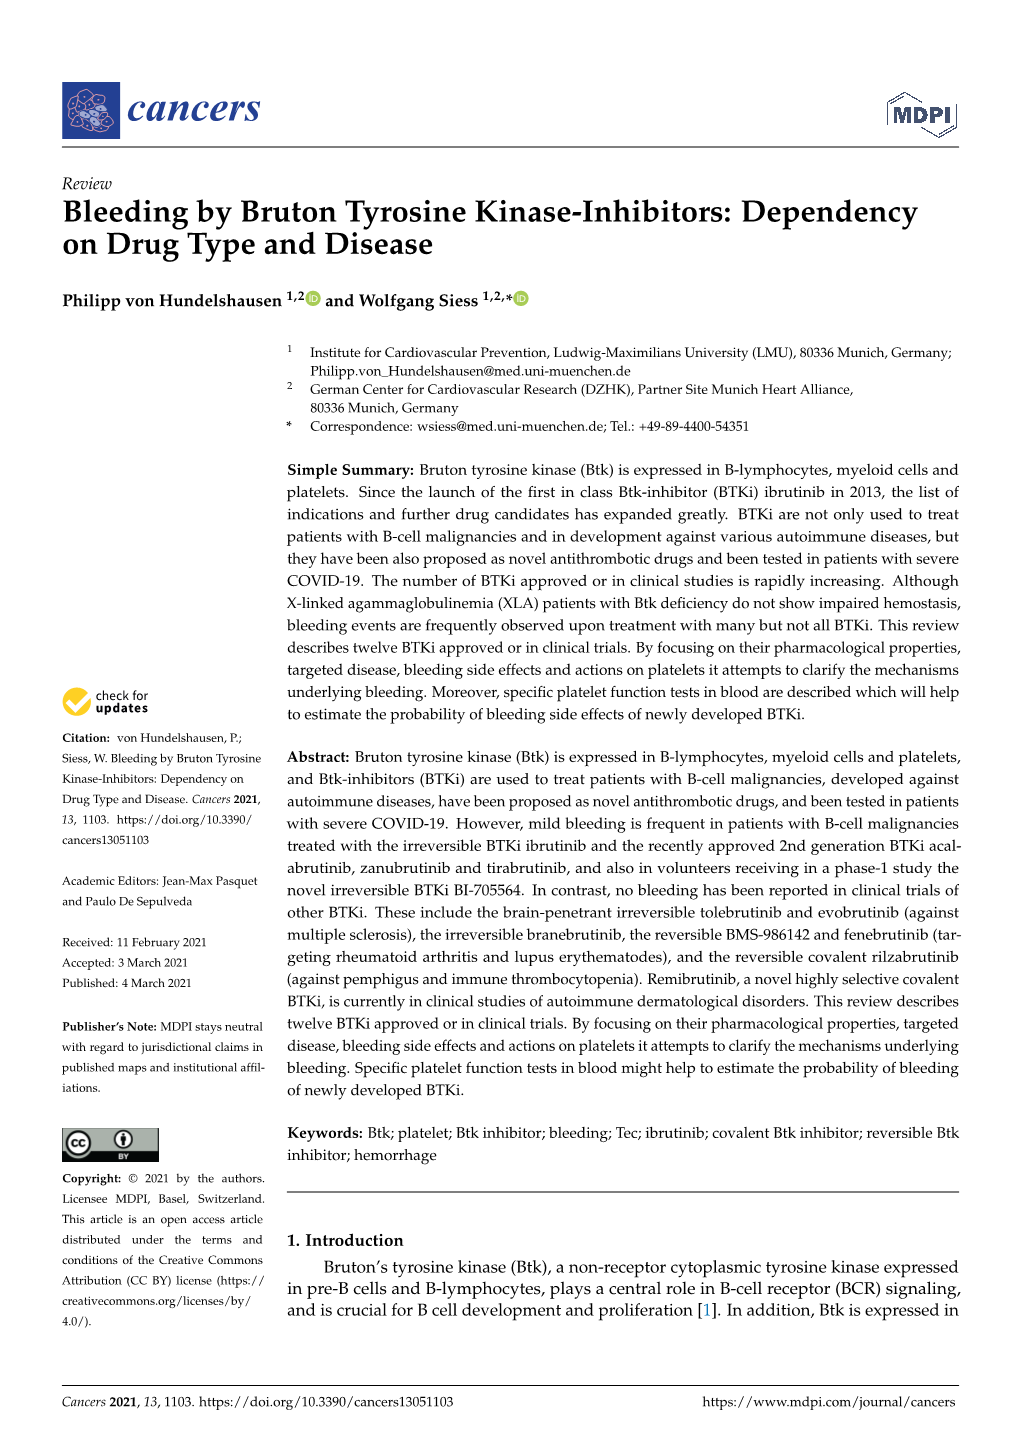 Bleeding by Bruton Tyrosine Kinase-Inhibitors: Dependency on Drug Type and Disease